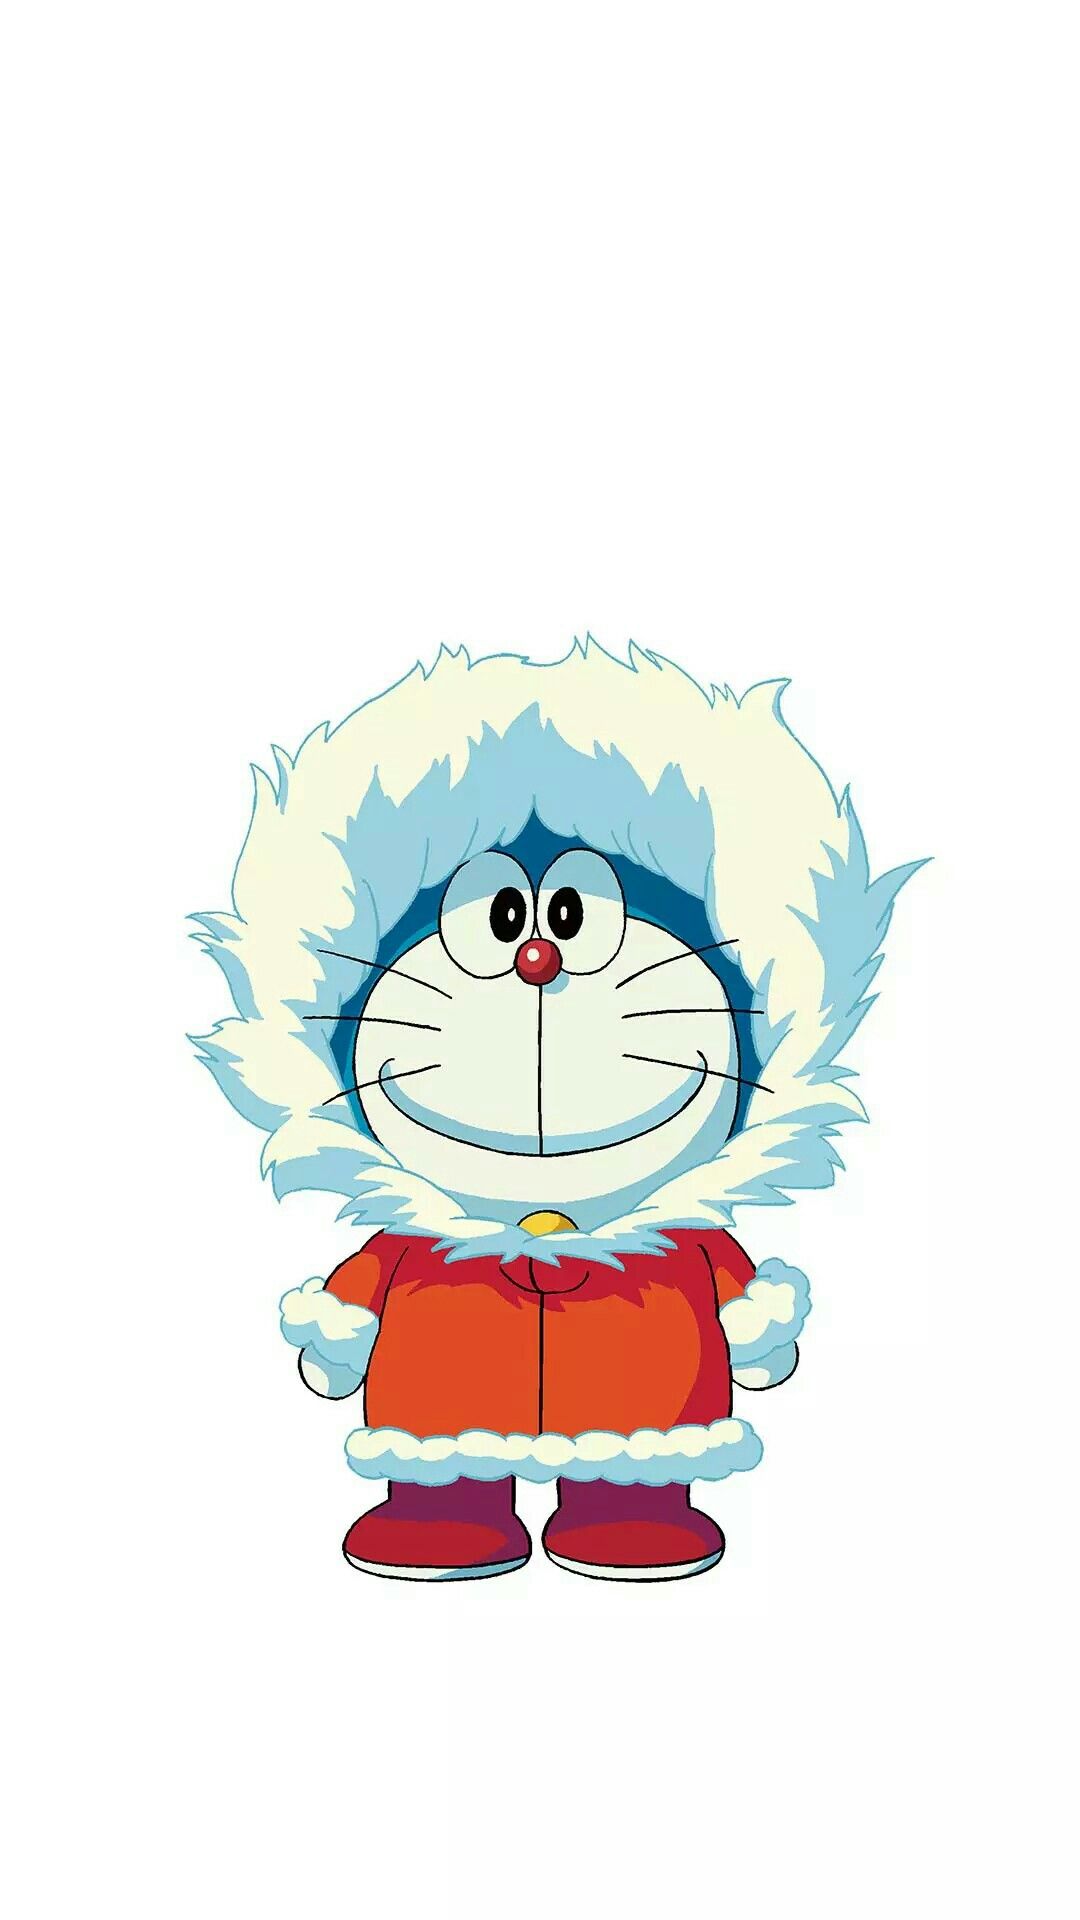 Doraemon là một trong những nhân vật hoạt hình được mến mộ nhất tại Việt Nam. Với hình ảnh này, bạn sẽ được đi cùng Doraemon trong những chuyến phiêu lưu kỳ thú để giúp đỡ Nobita và những người bạn của anh. Hãy cùng đón xem và tìm hiểu thêm về những trò chơi thú vị mà Doraemon và những người bạn của anh chơi nhé!